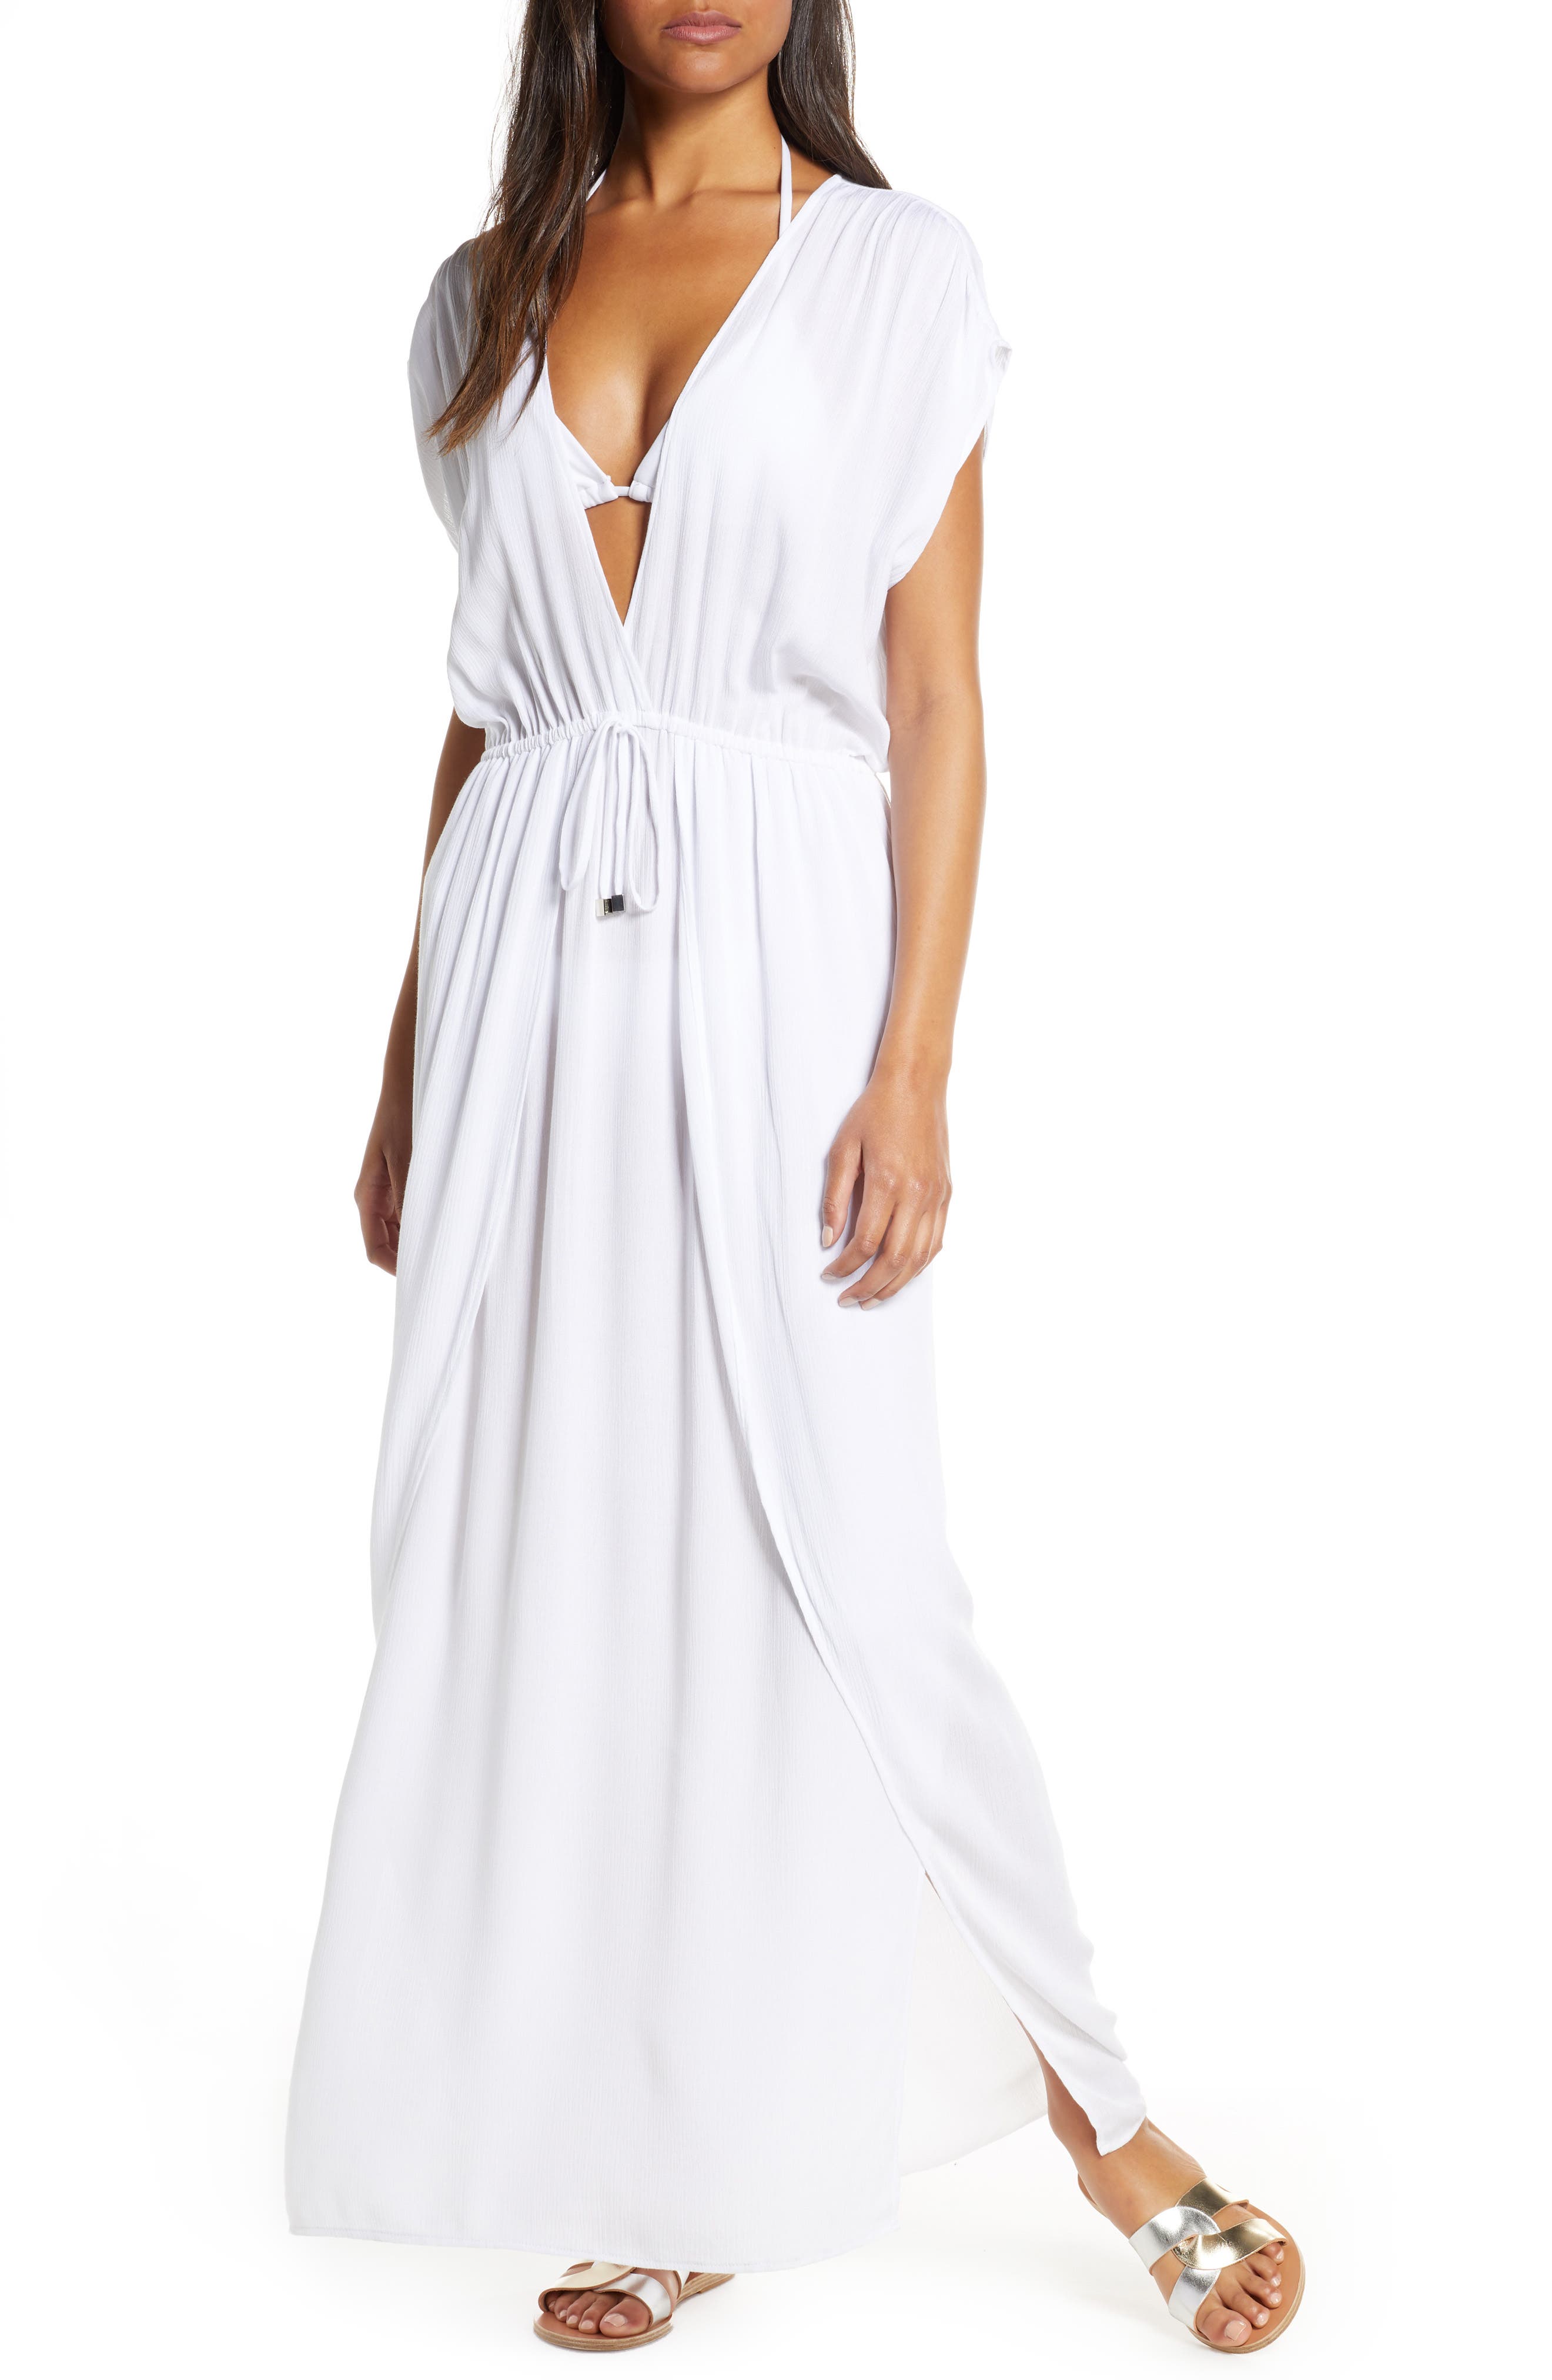 nordstrom white dress long